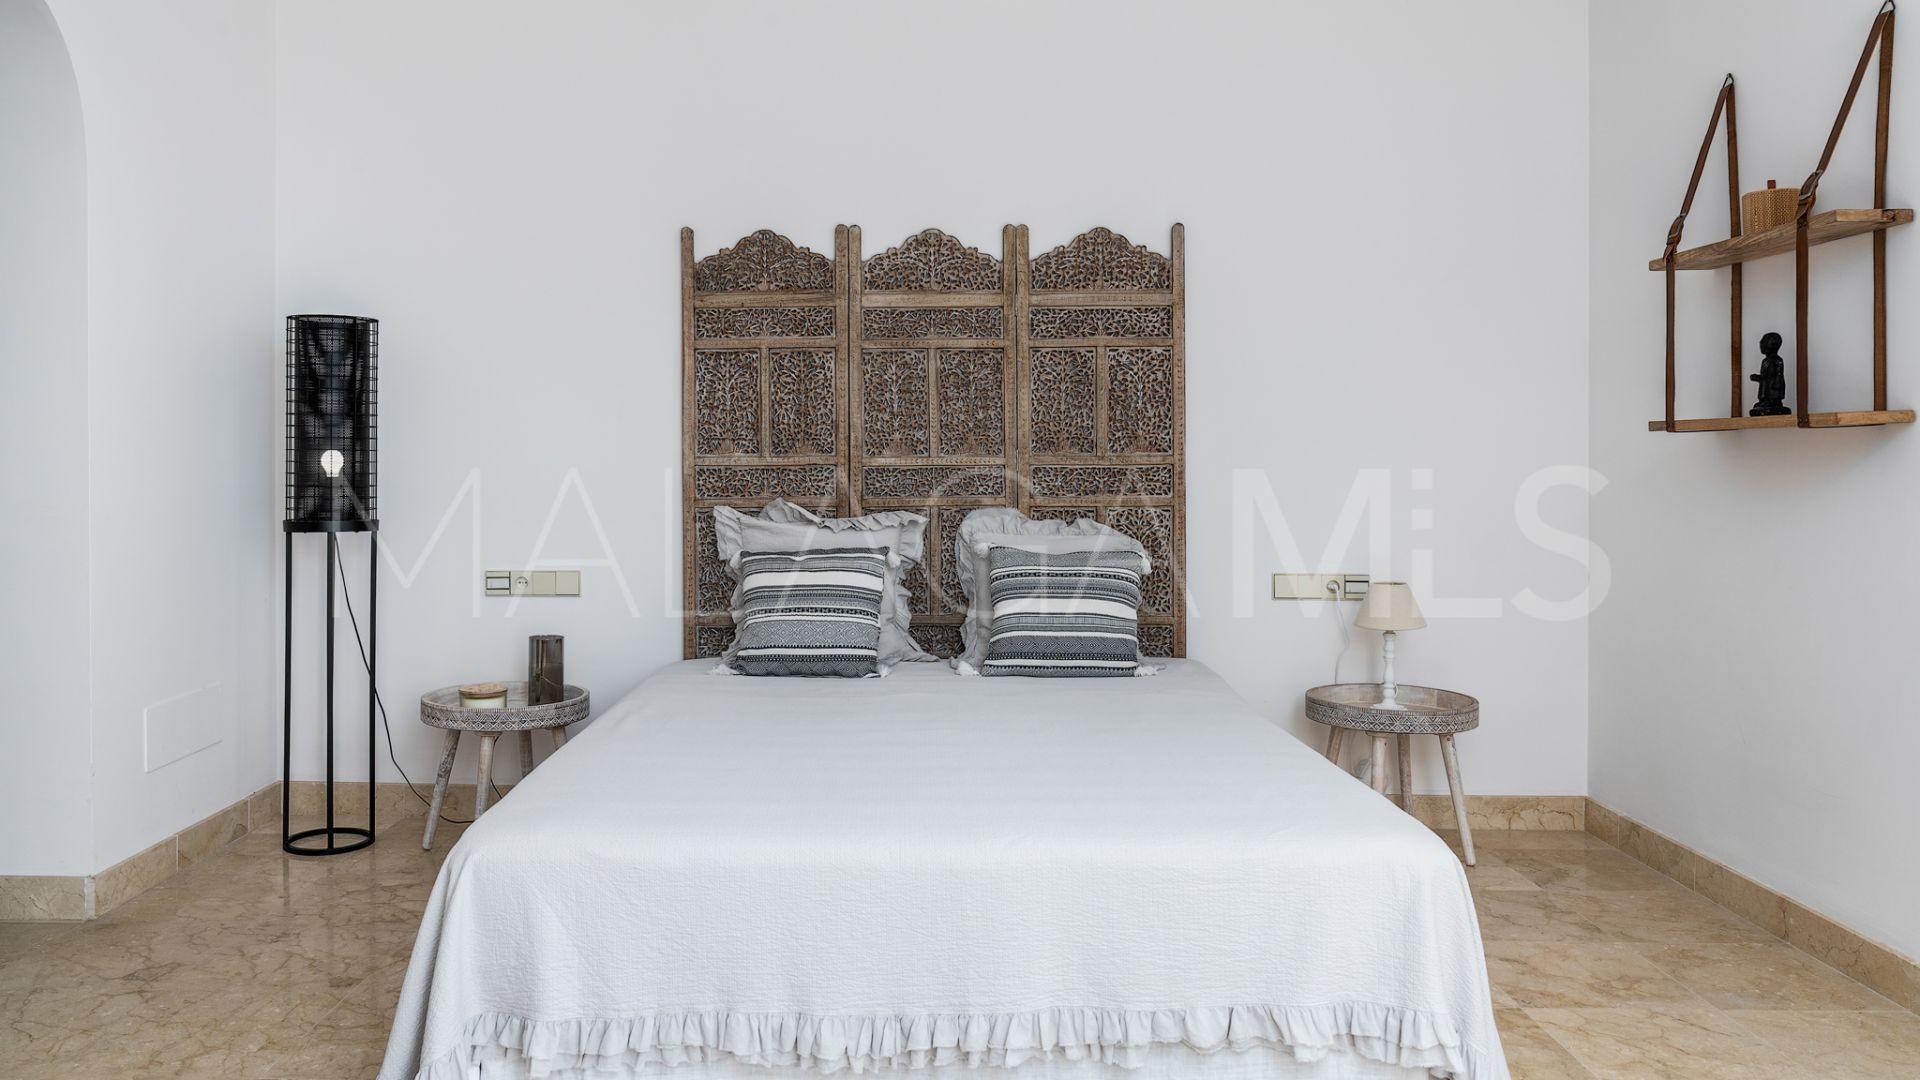 Villa de 6 bedrooms for sale in Los Monteros